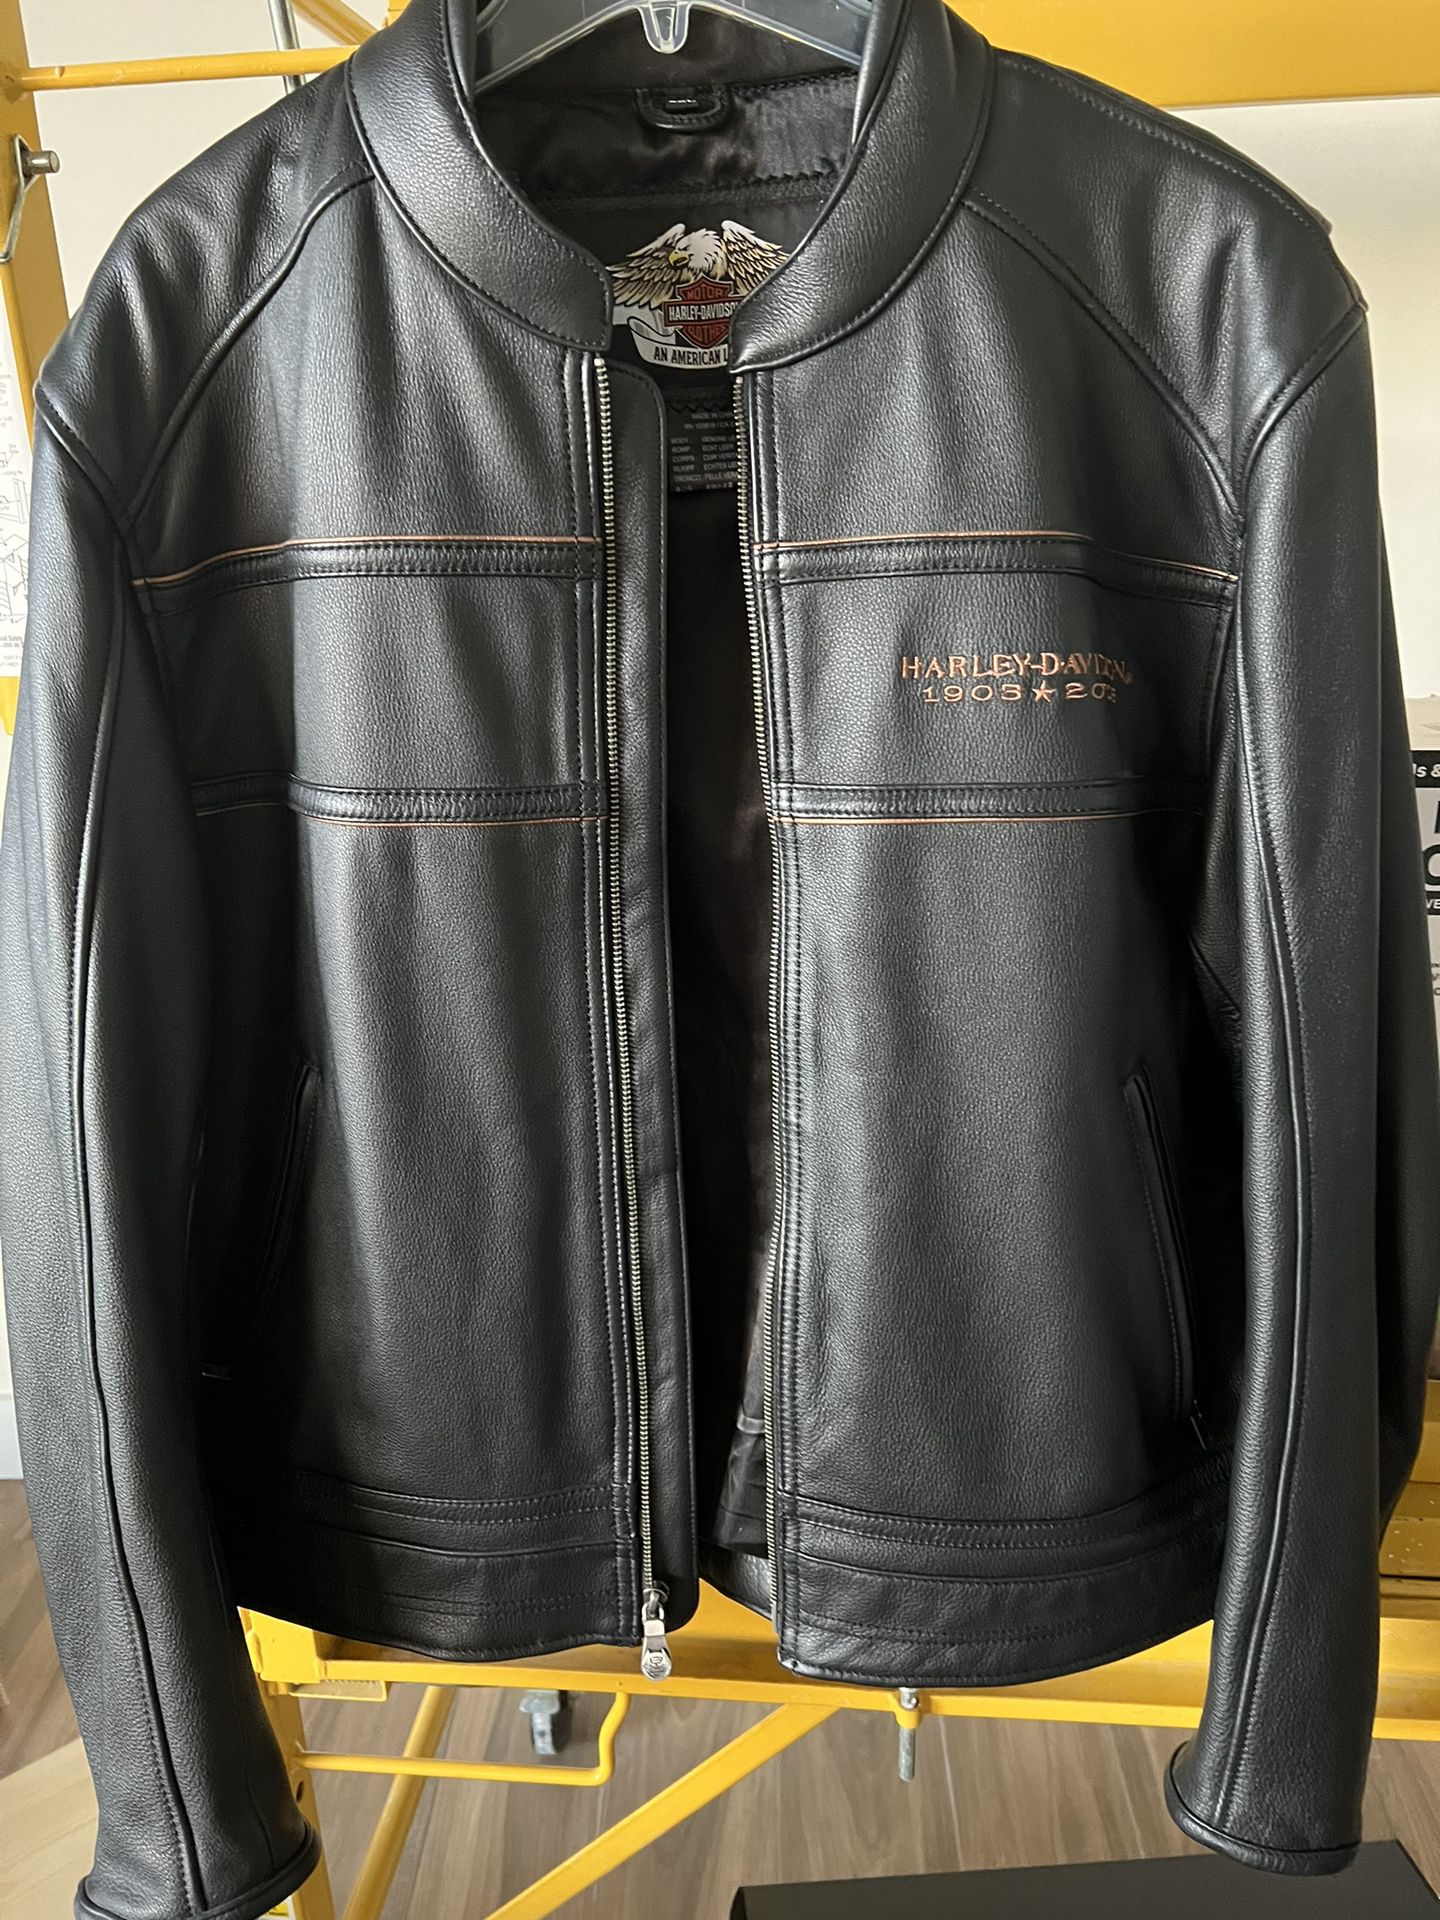 Harley Davidson Men’s Jacket 